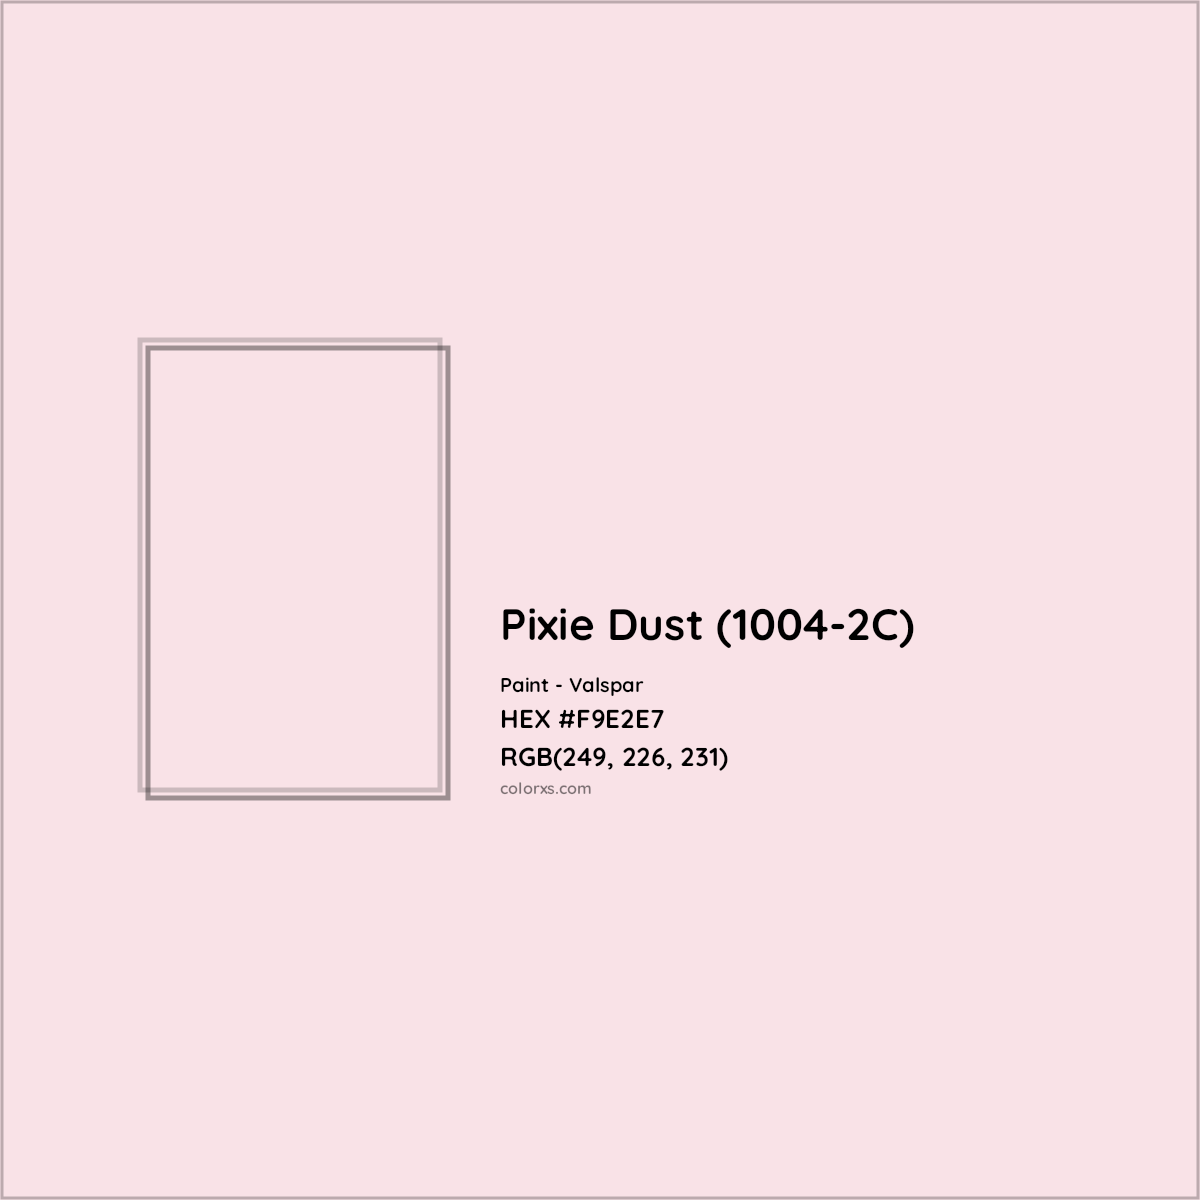 HEX #F9E2E7 Pixie Dust (1004-2C) Paint Valspar - Color Code